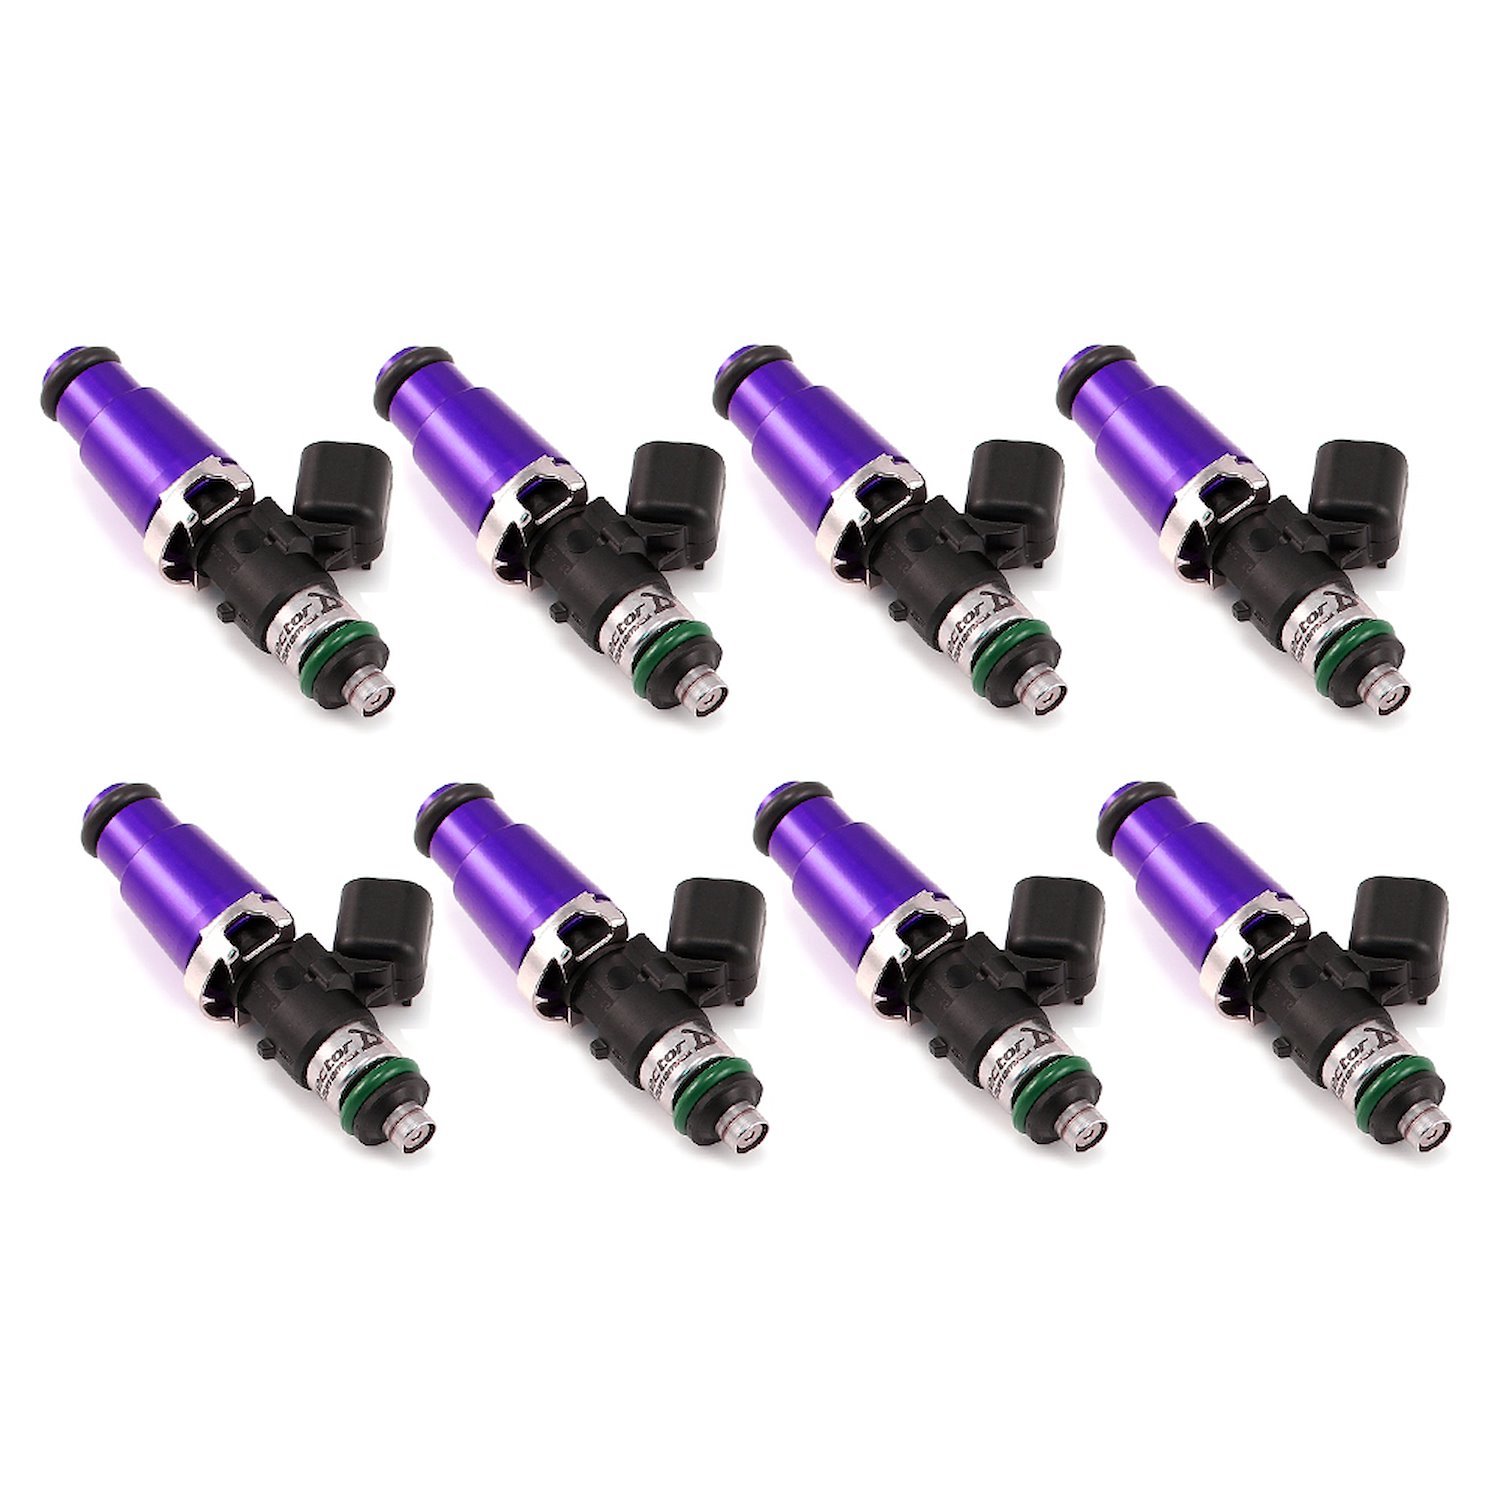 1050.60.14.14.8 1050cc Fuel Injector Set, 14 mm (Purple) Adaptors